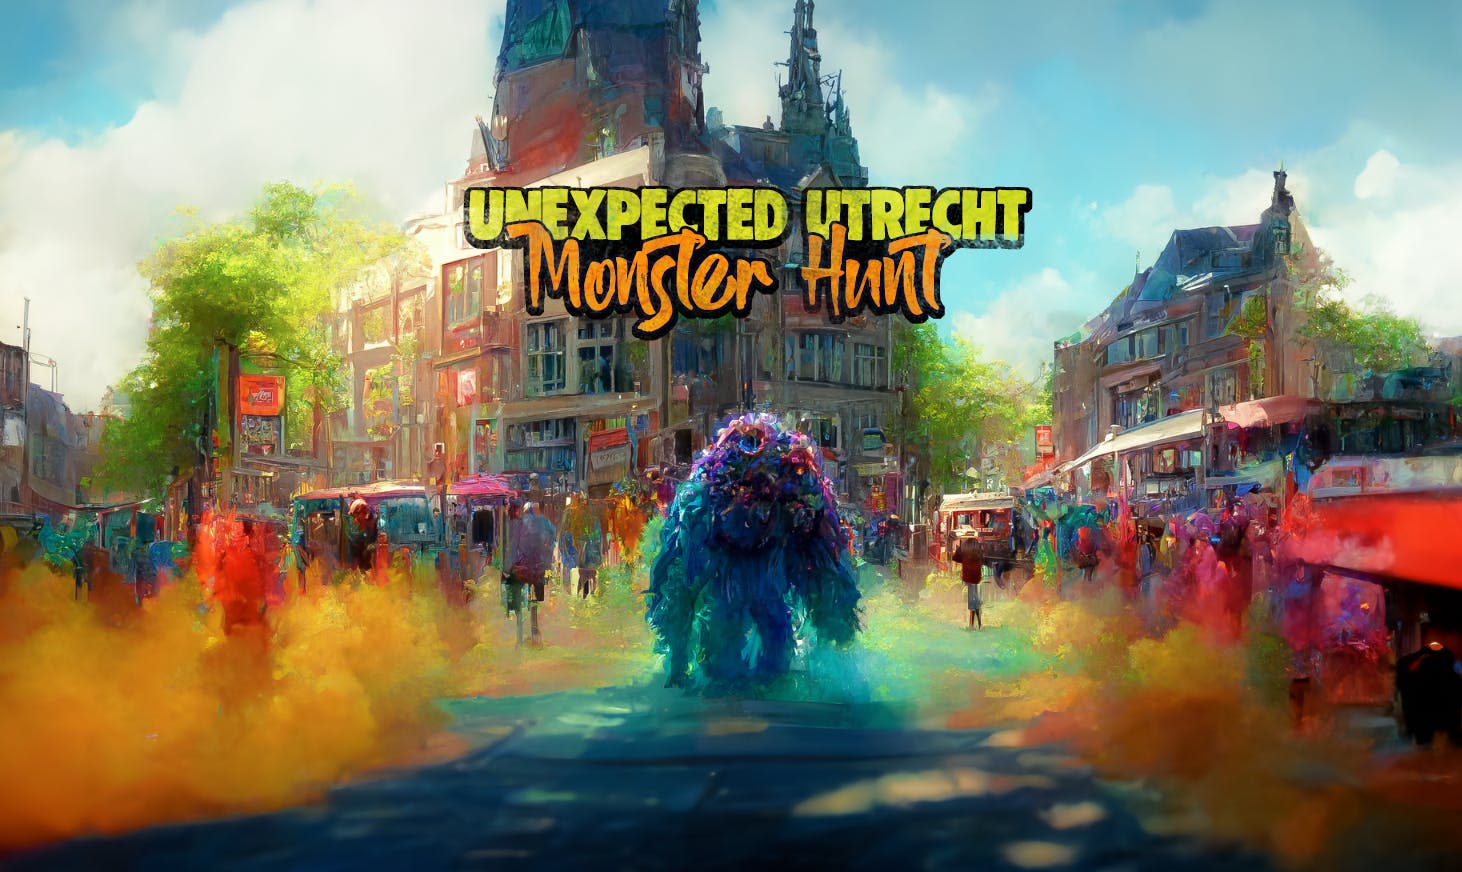 Centro da cidade de Utrecht: passeio e jogo de exploração do mistério do monstro